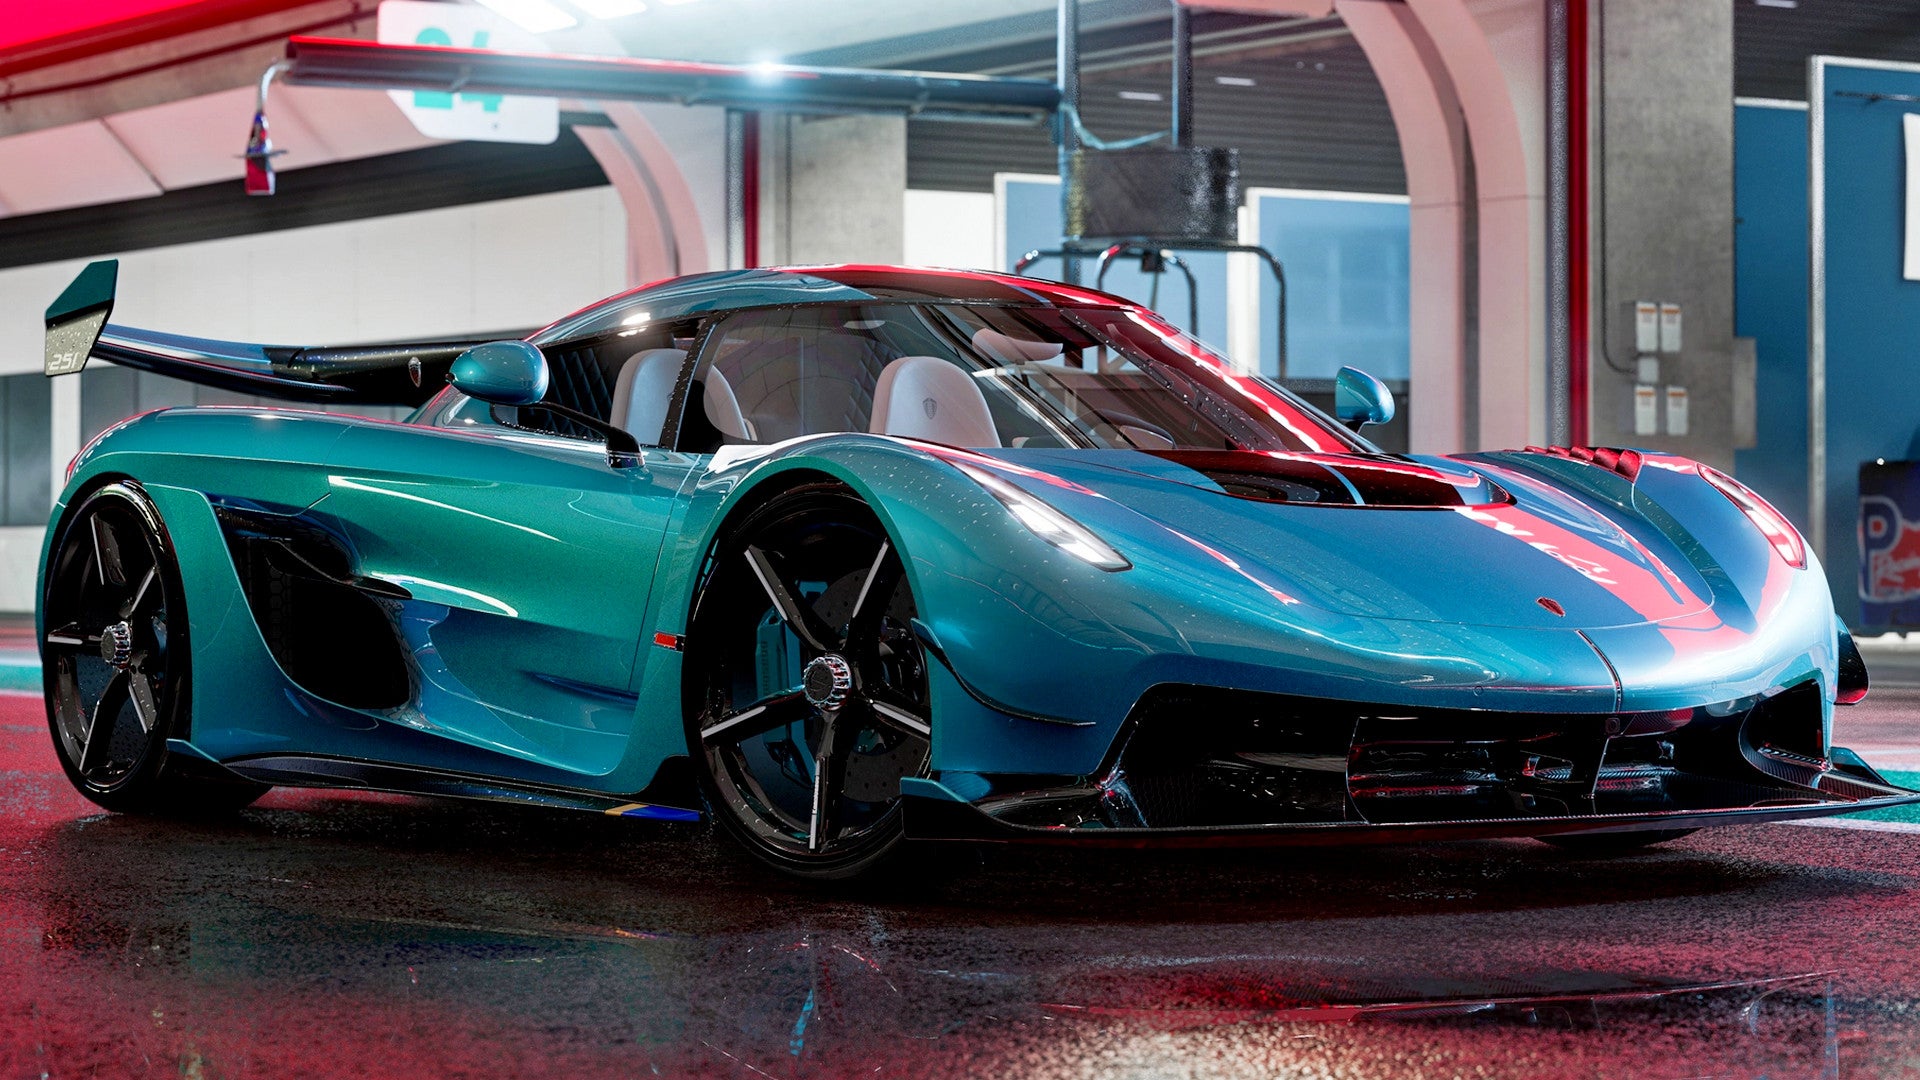 Bilder zu Forza Motorsport verspricht die bisher realistischsten Fahrzeugschäden